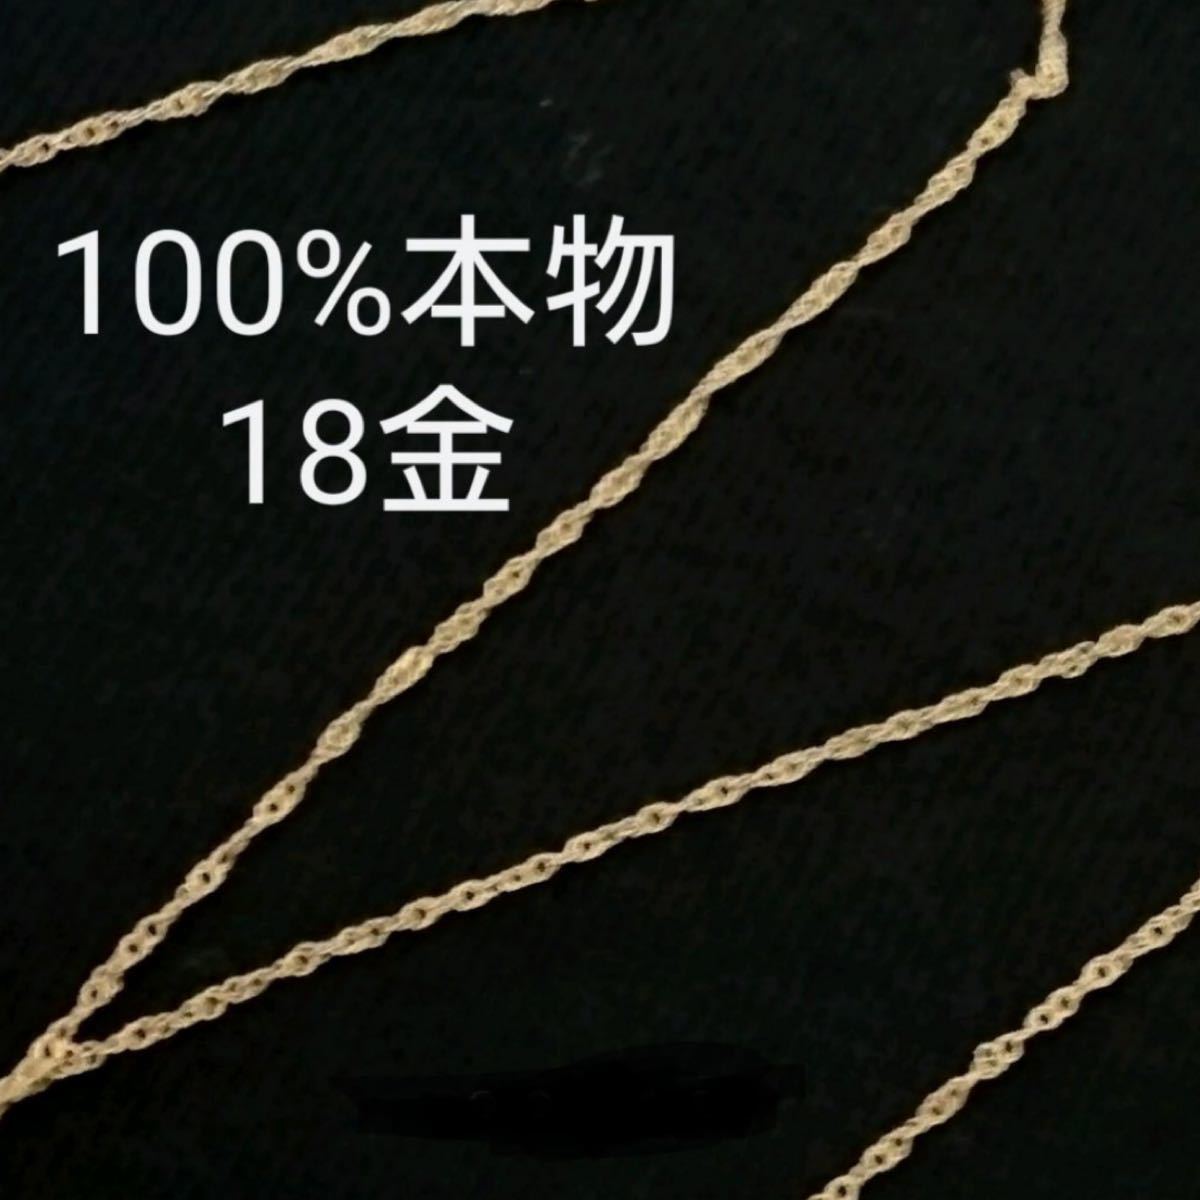 日本最大の 新品 18金 K18刻印あり 45cm スクリューチェーン 